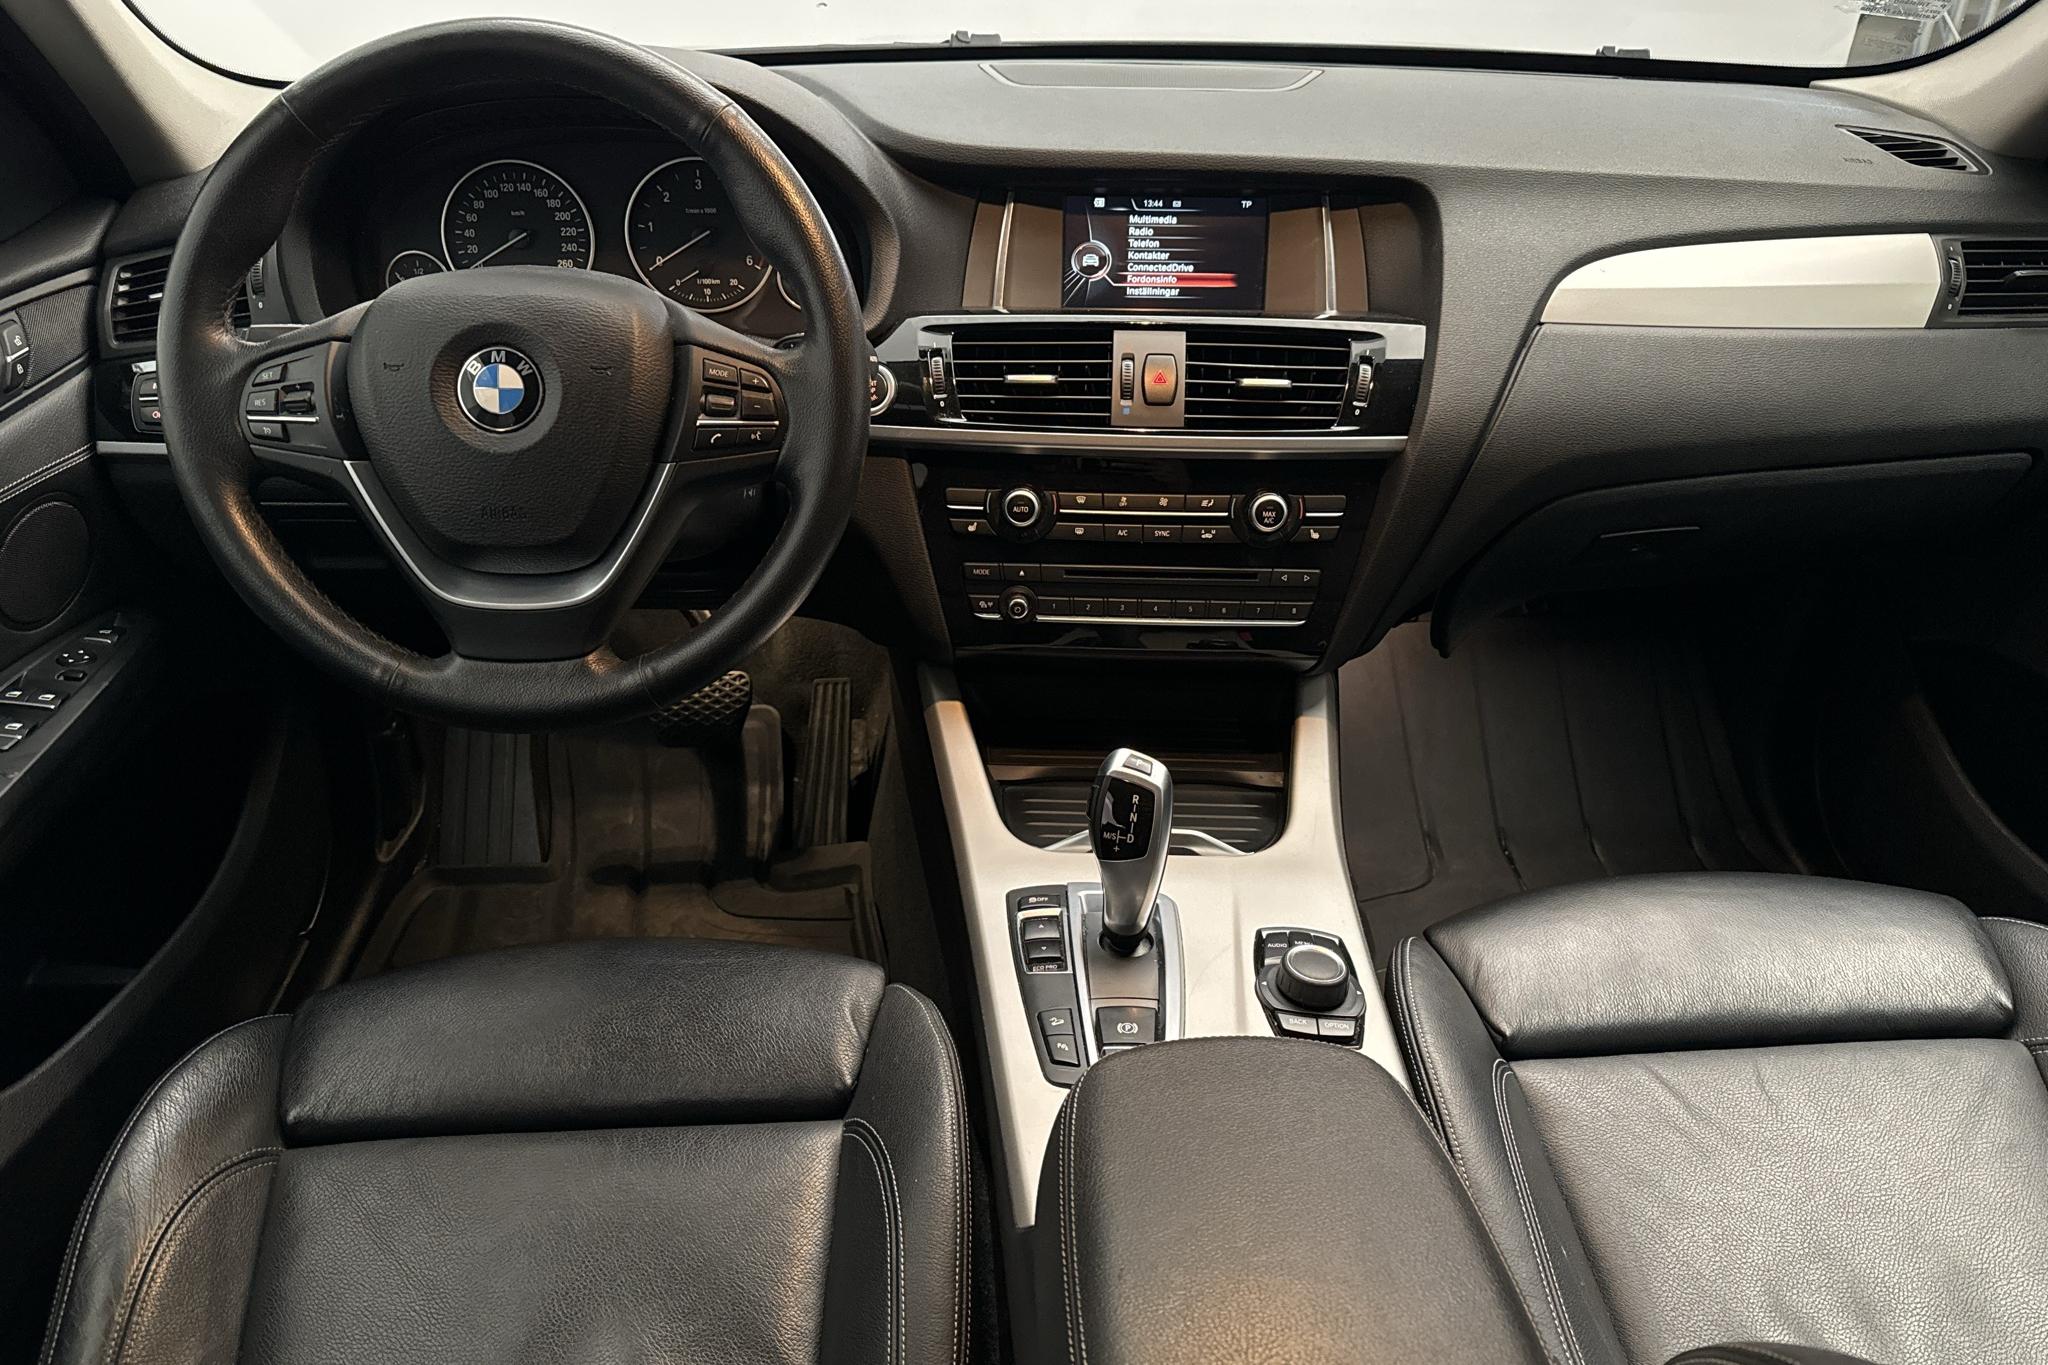 BMW X3 xDrive20d, F25 (190hk) - 146 390 km - Automatic - black - 2017